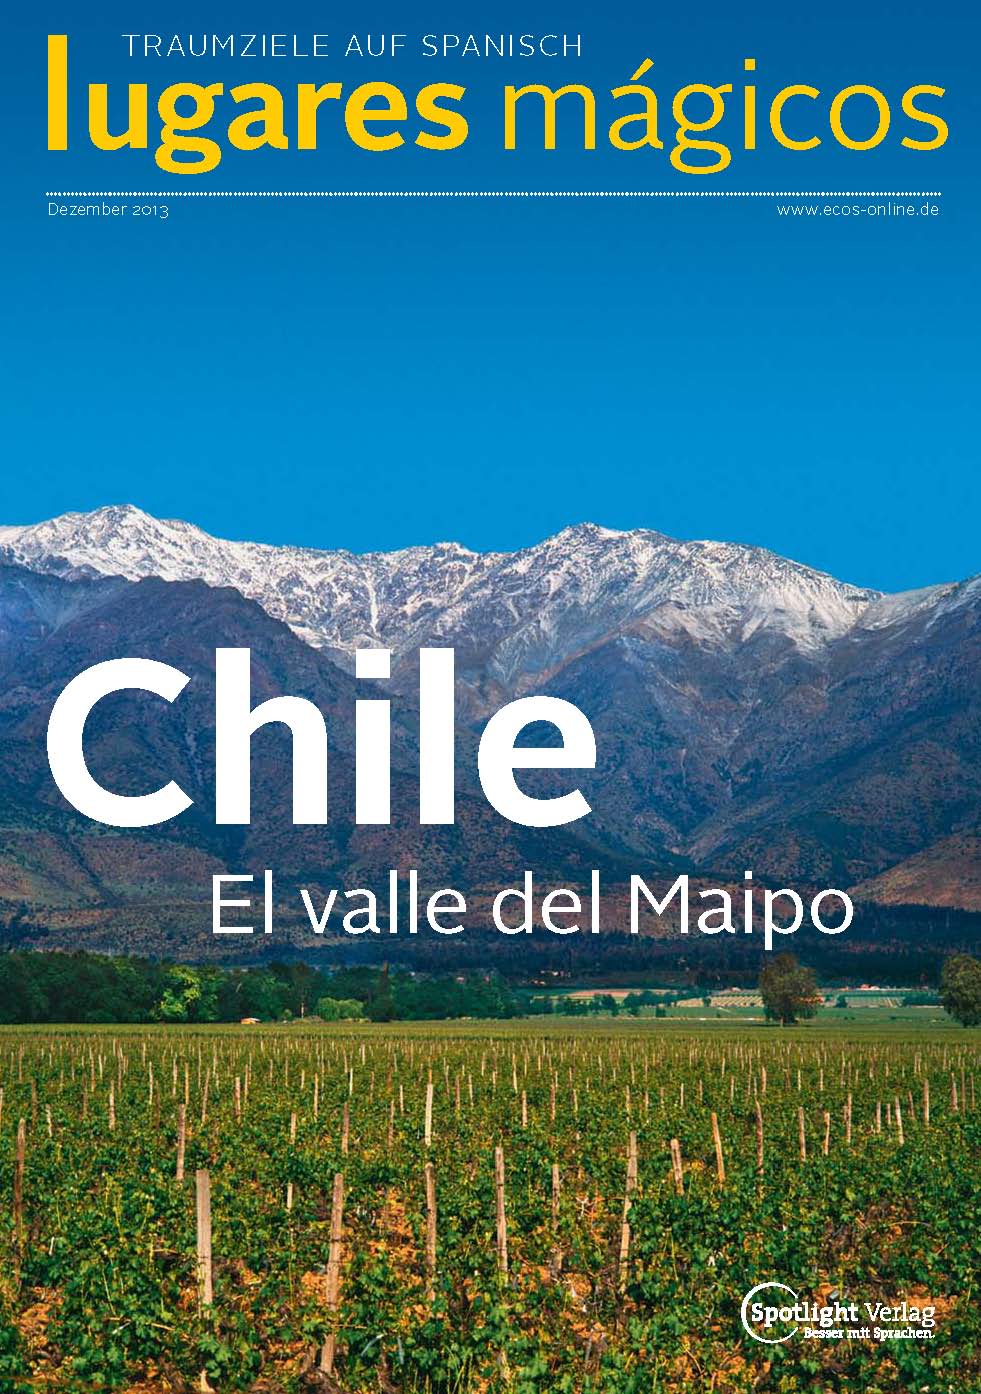 LugaresMagicos_Chile - El Valle del Maipo_ECOS2013 � M.M.